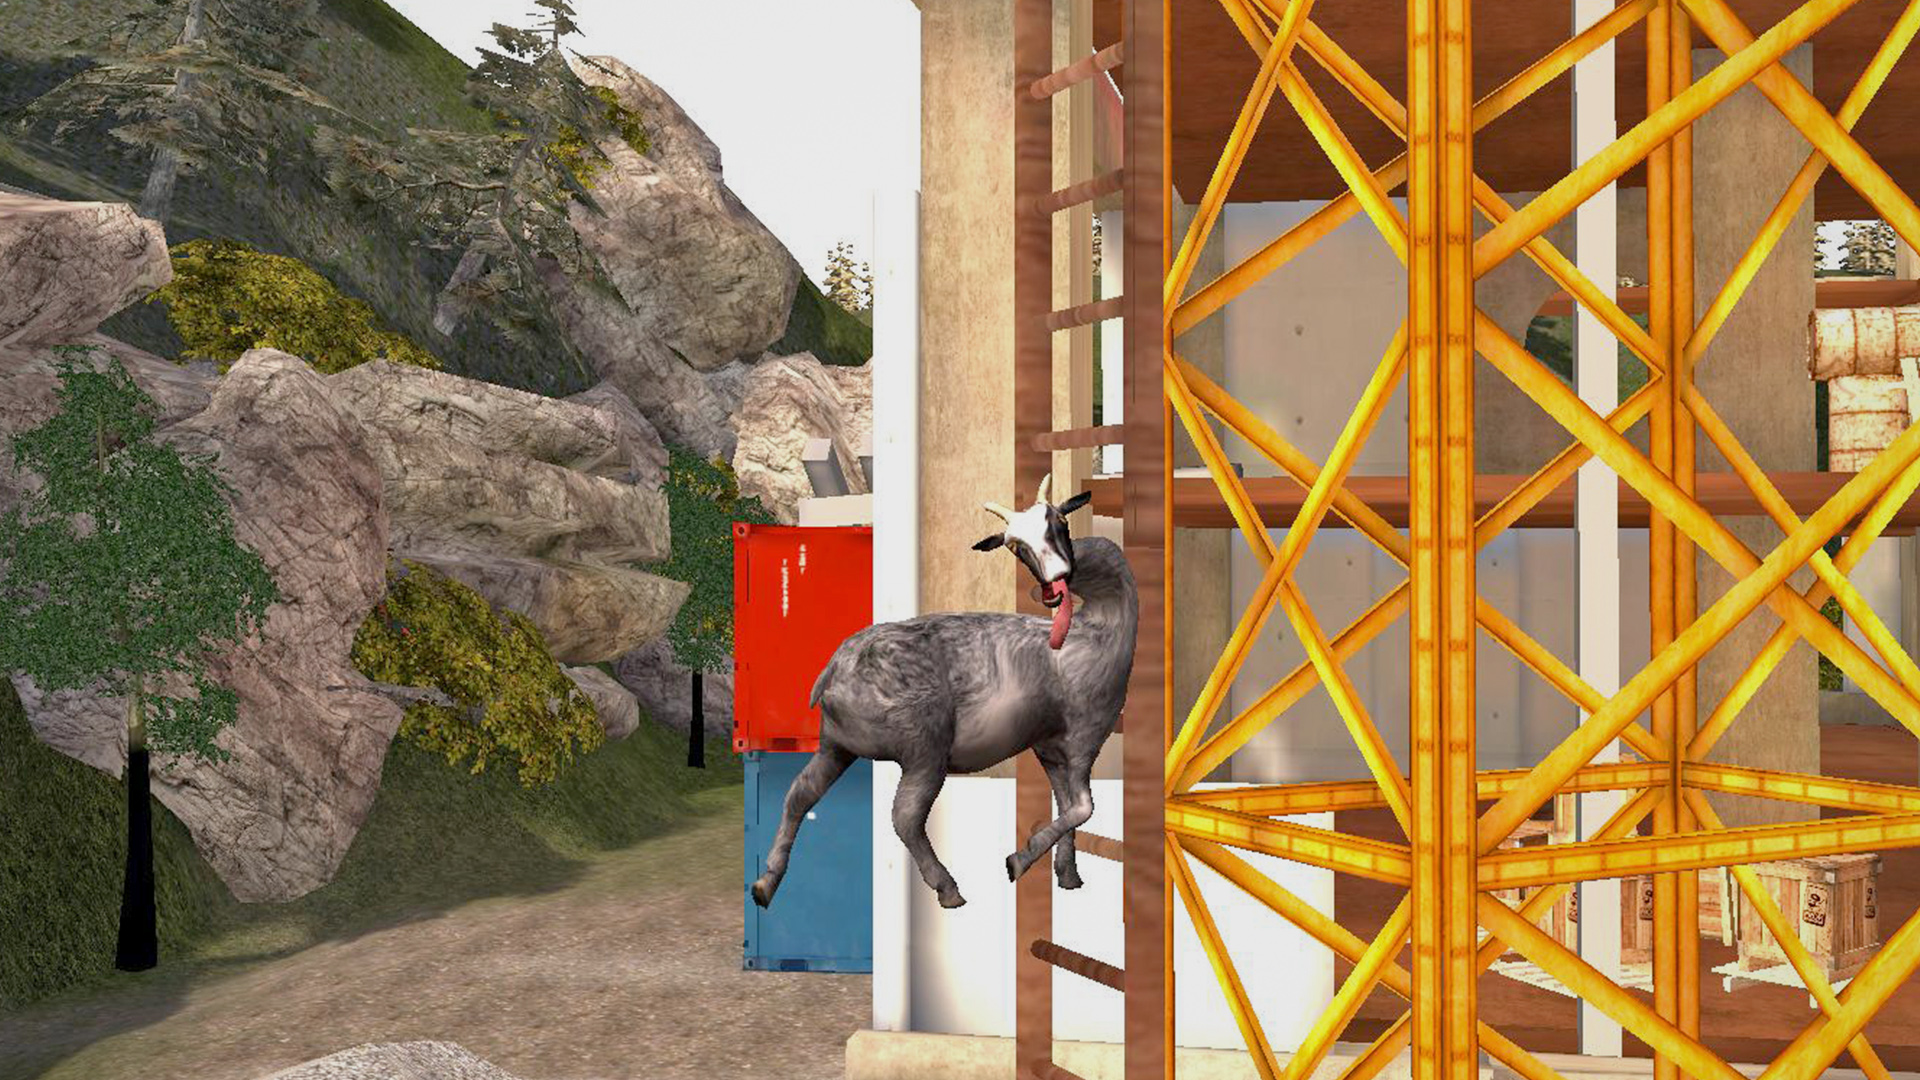 Simulator козы